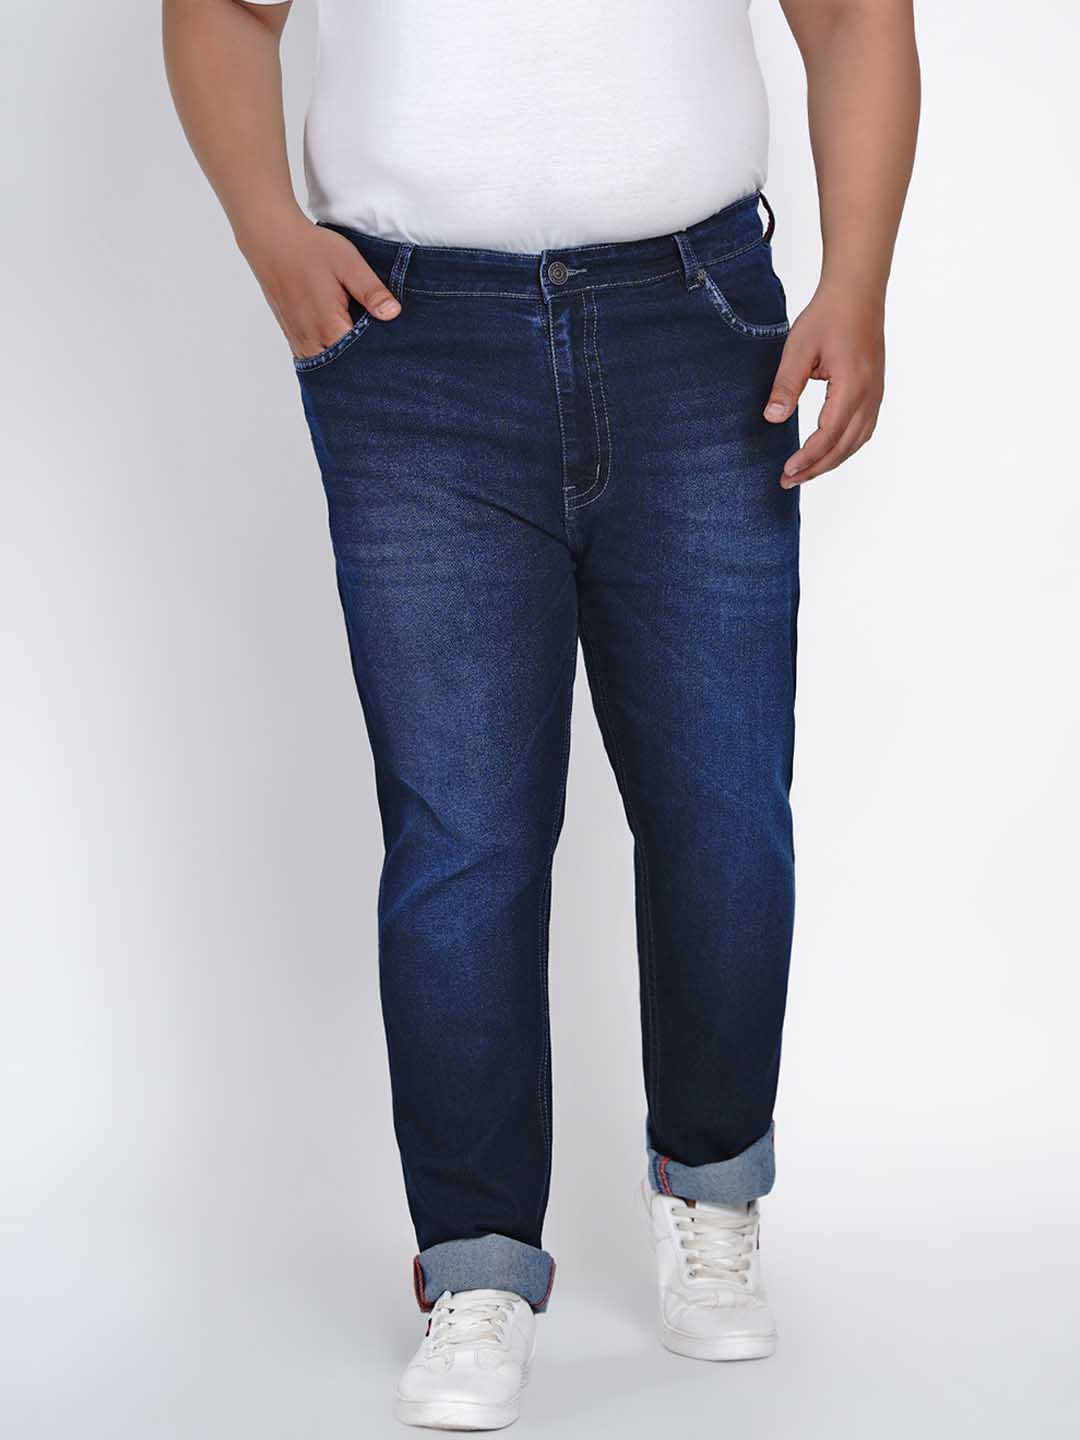 affordables/jeans/JPJ2007/jpj2007-2.jpg